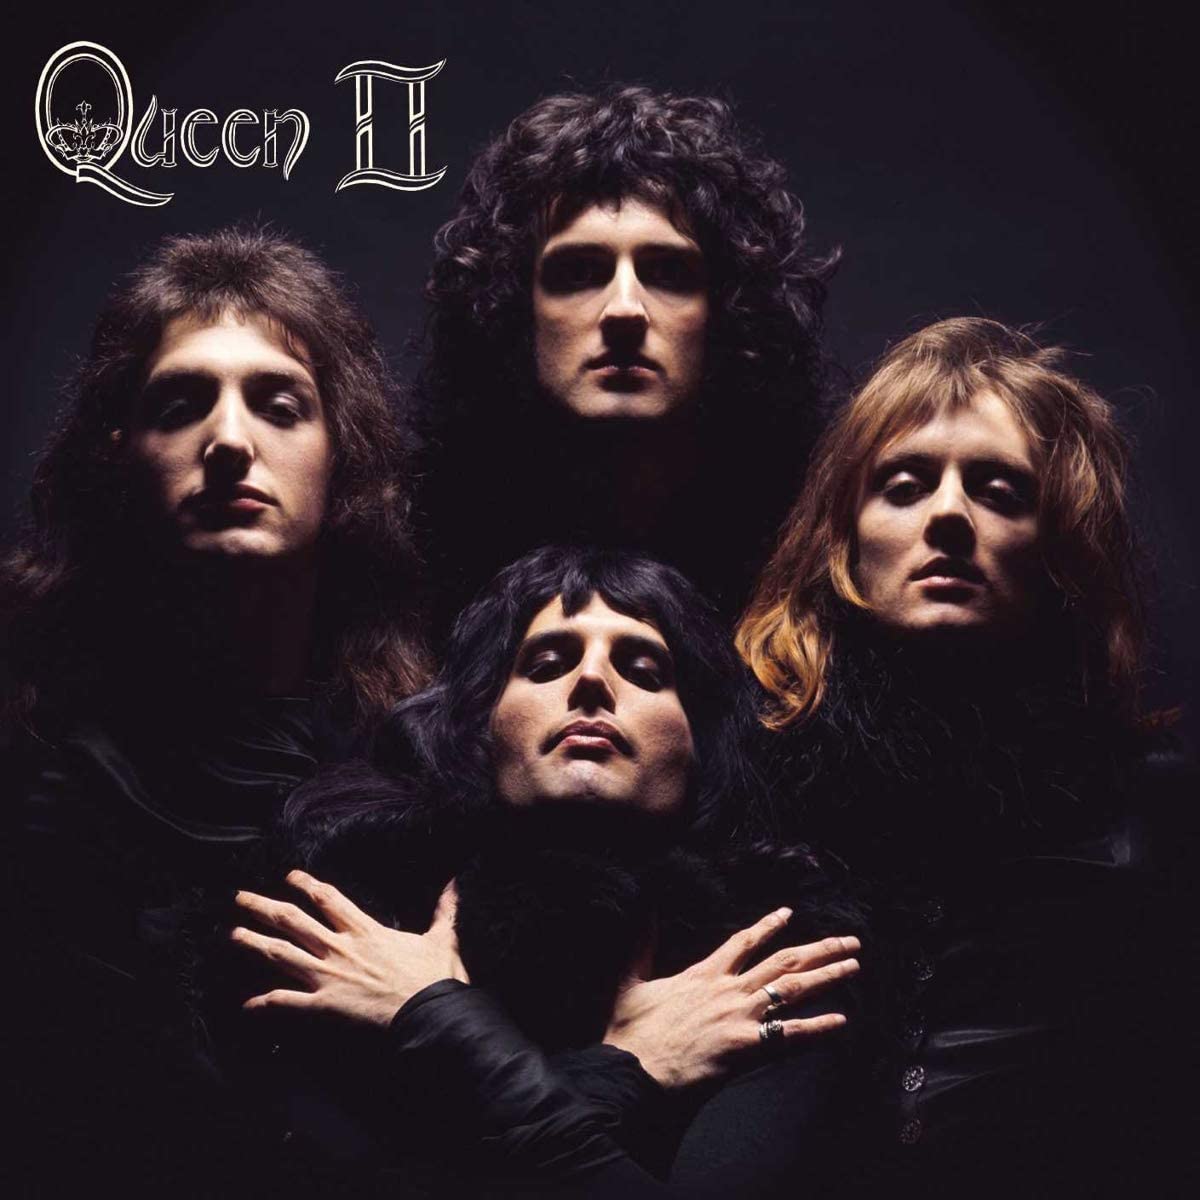 Discografia do Queen (álbuns de estúdio)